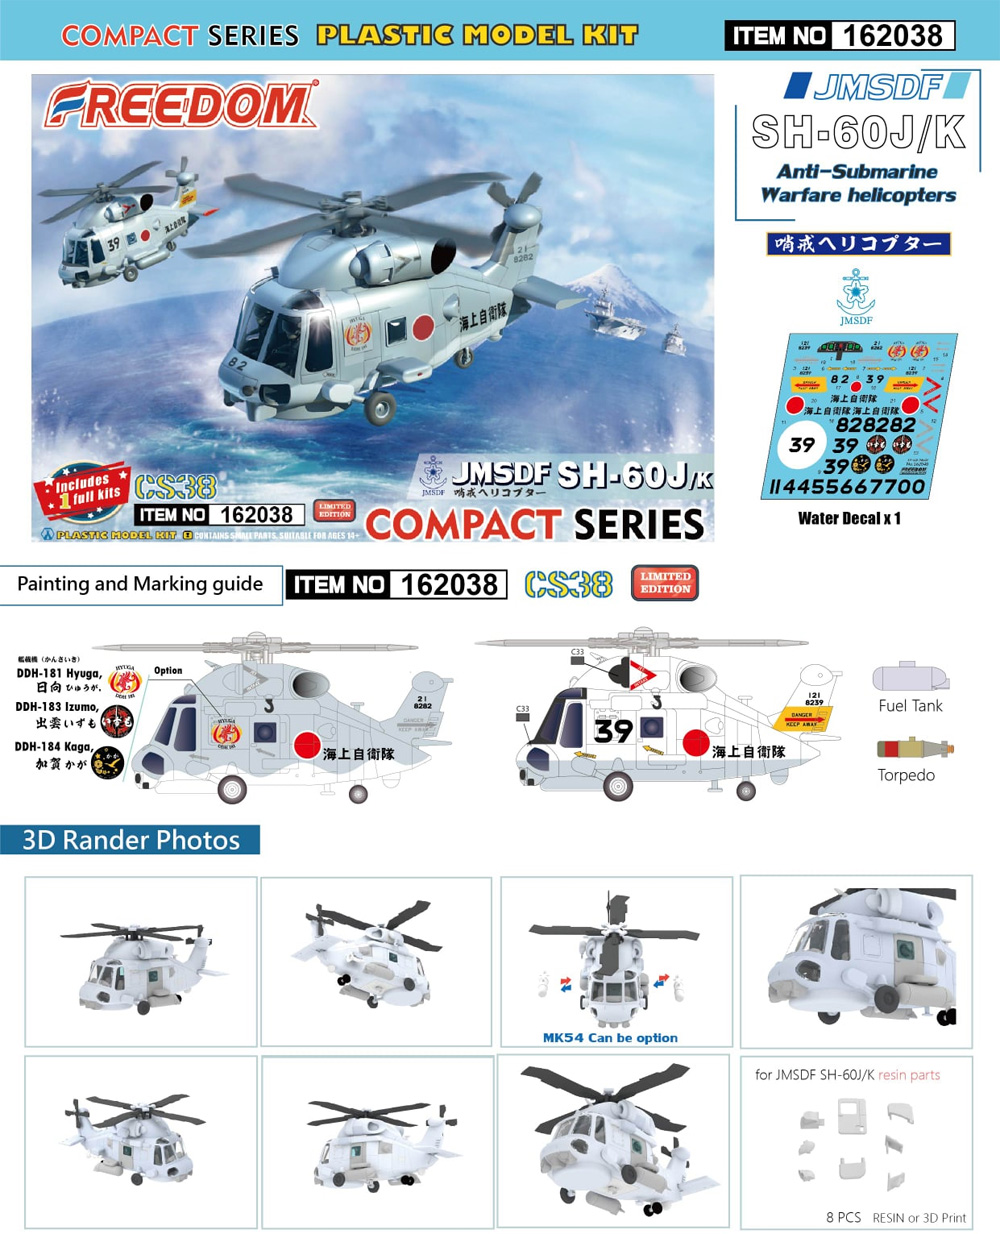 海上自衛隊 SH-60J/K 哨戒ヘリコプター プラモデル (フリーダムモデル コンパクトシリーズ No.162038) 商品画像_1